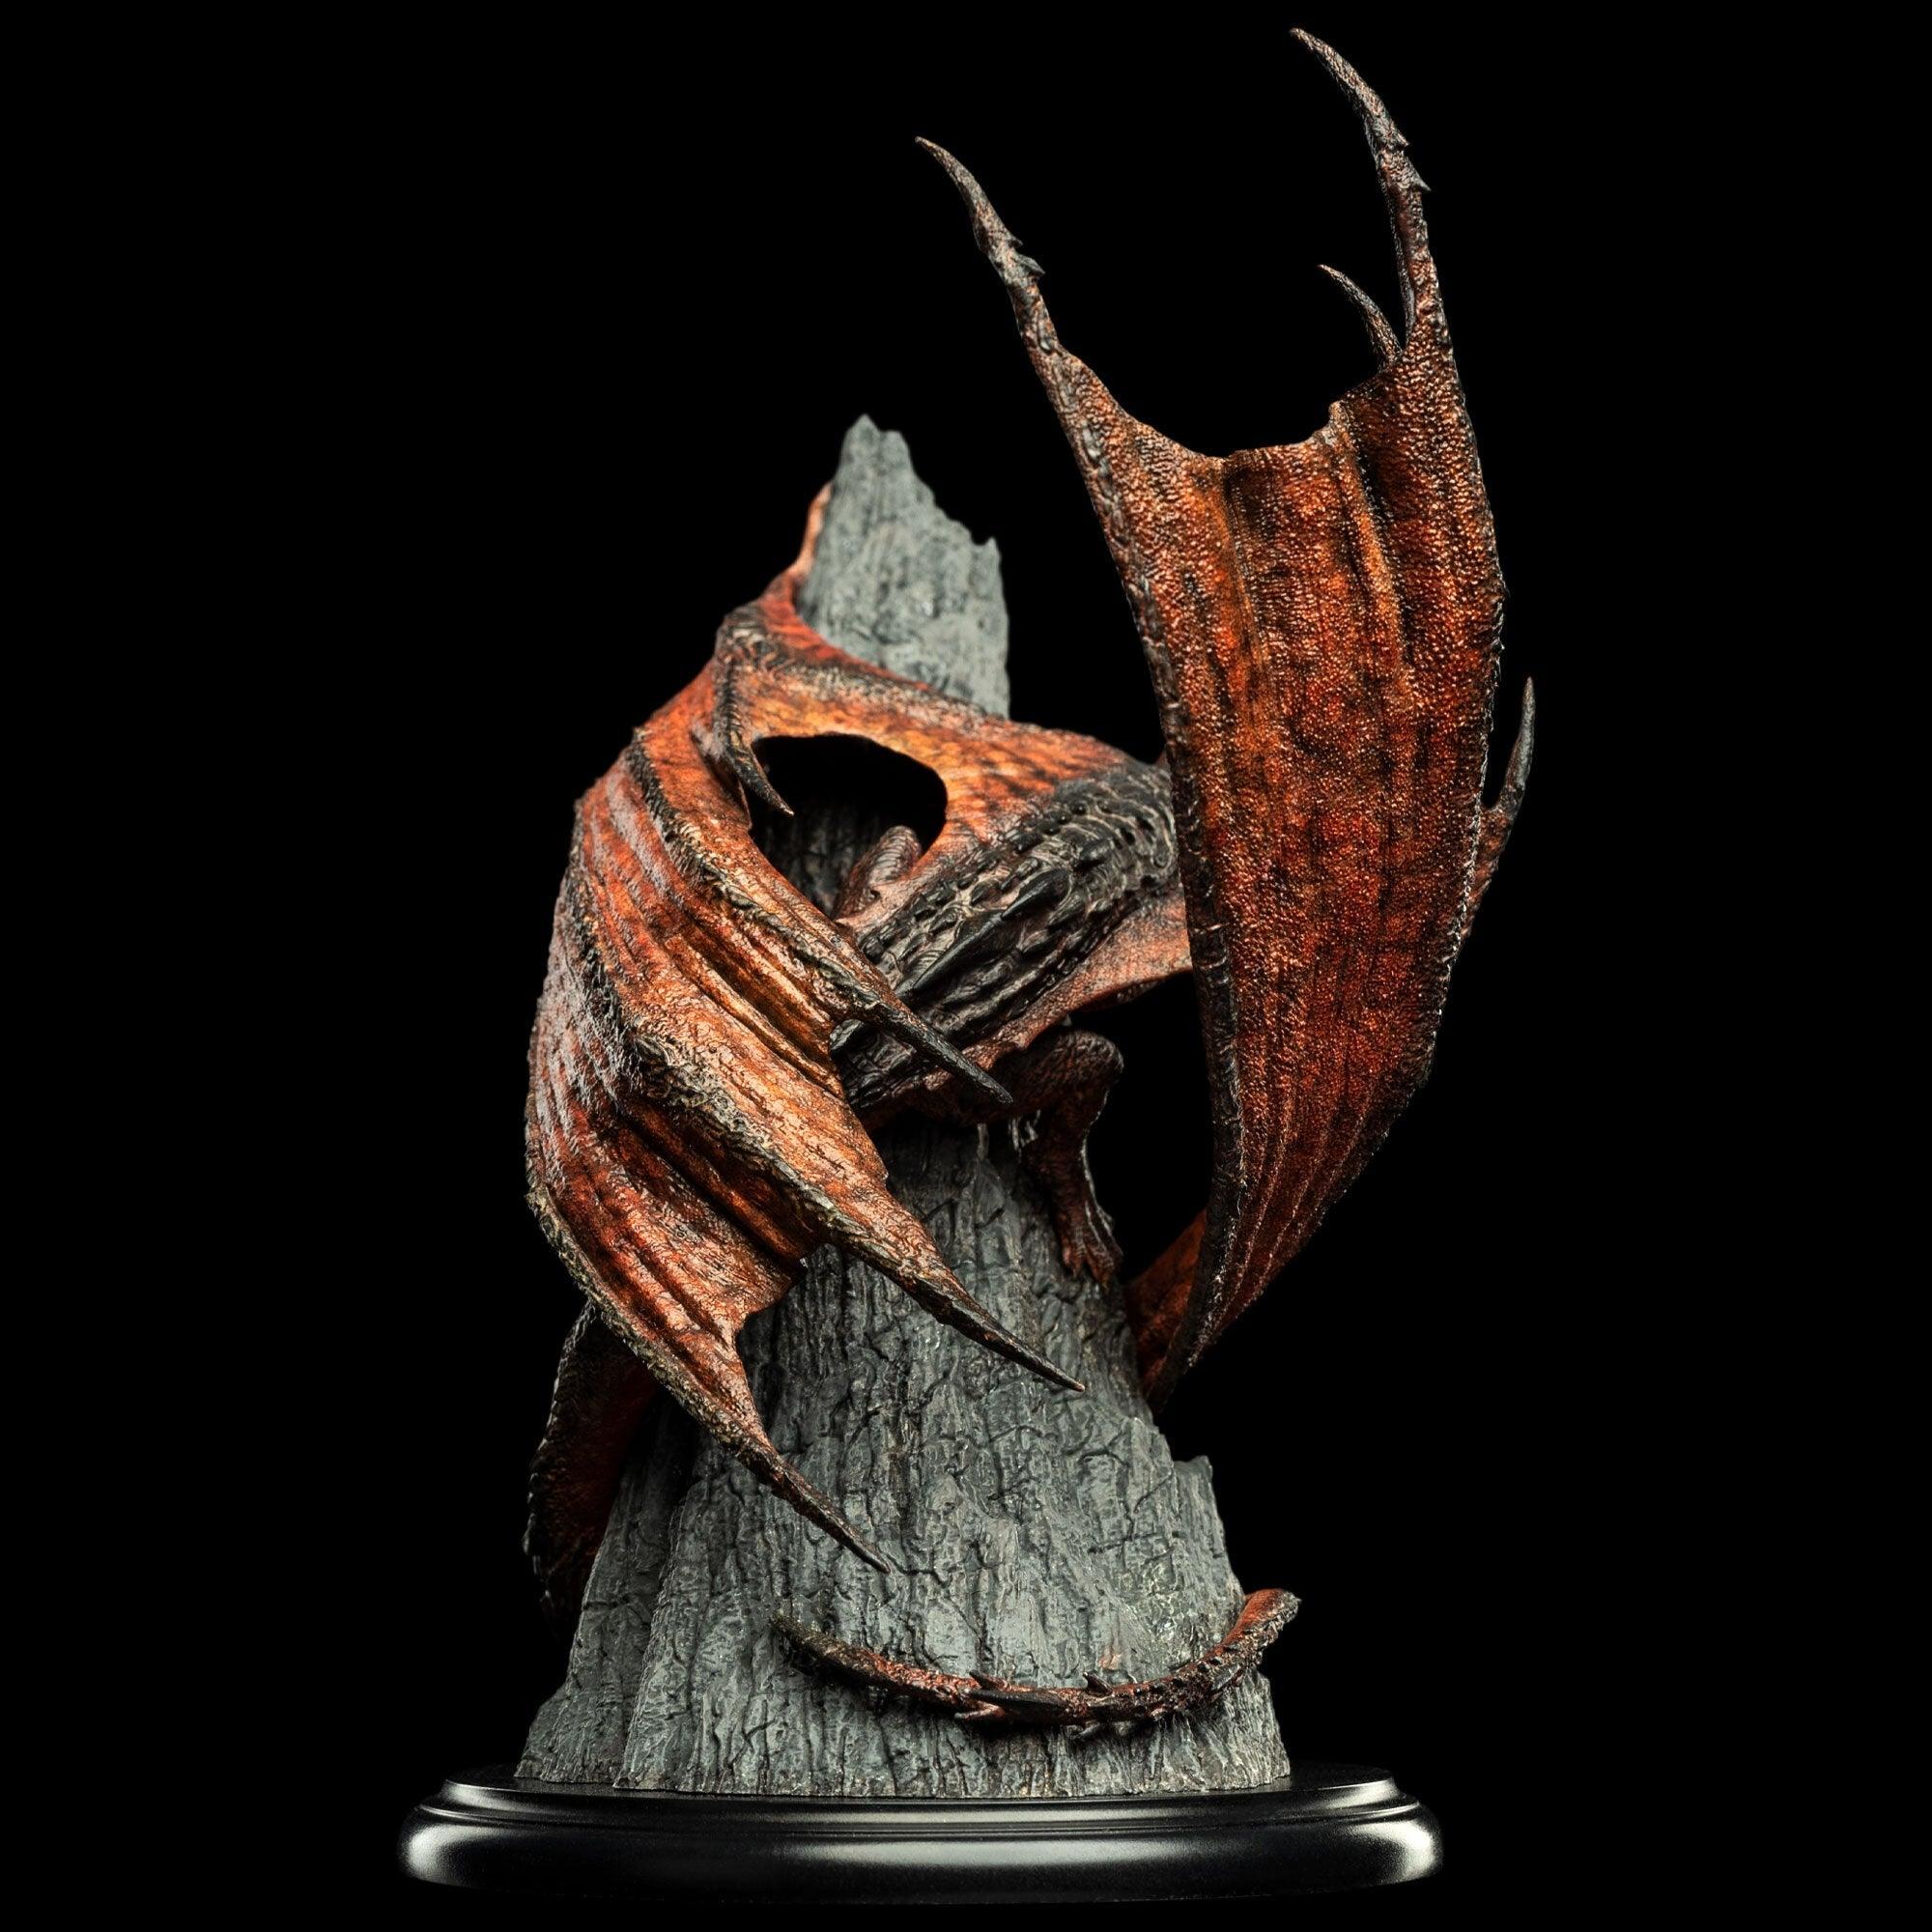 WET03306 The Hobbit - Smaug the Magnificent Miniature Statue - Weta Workshop - Titan Pop Culture